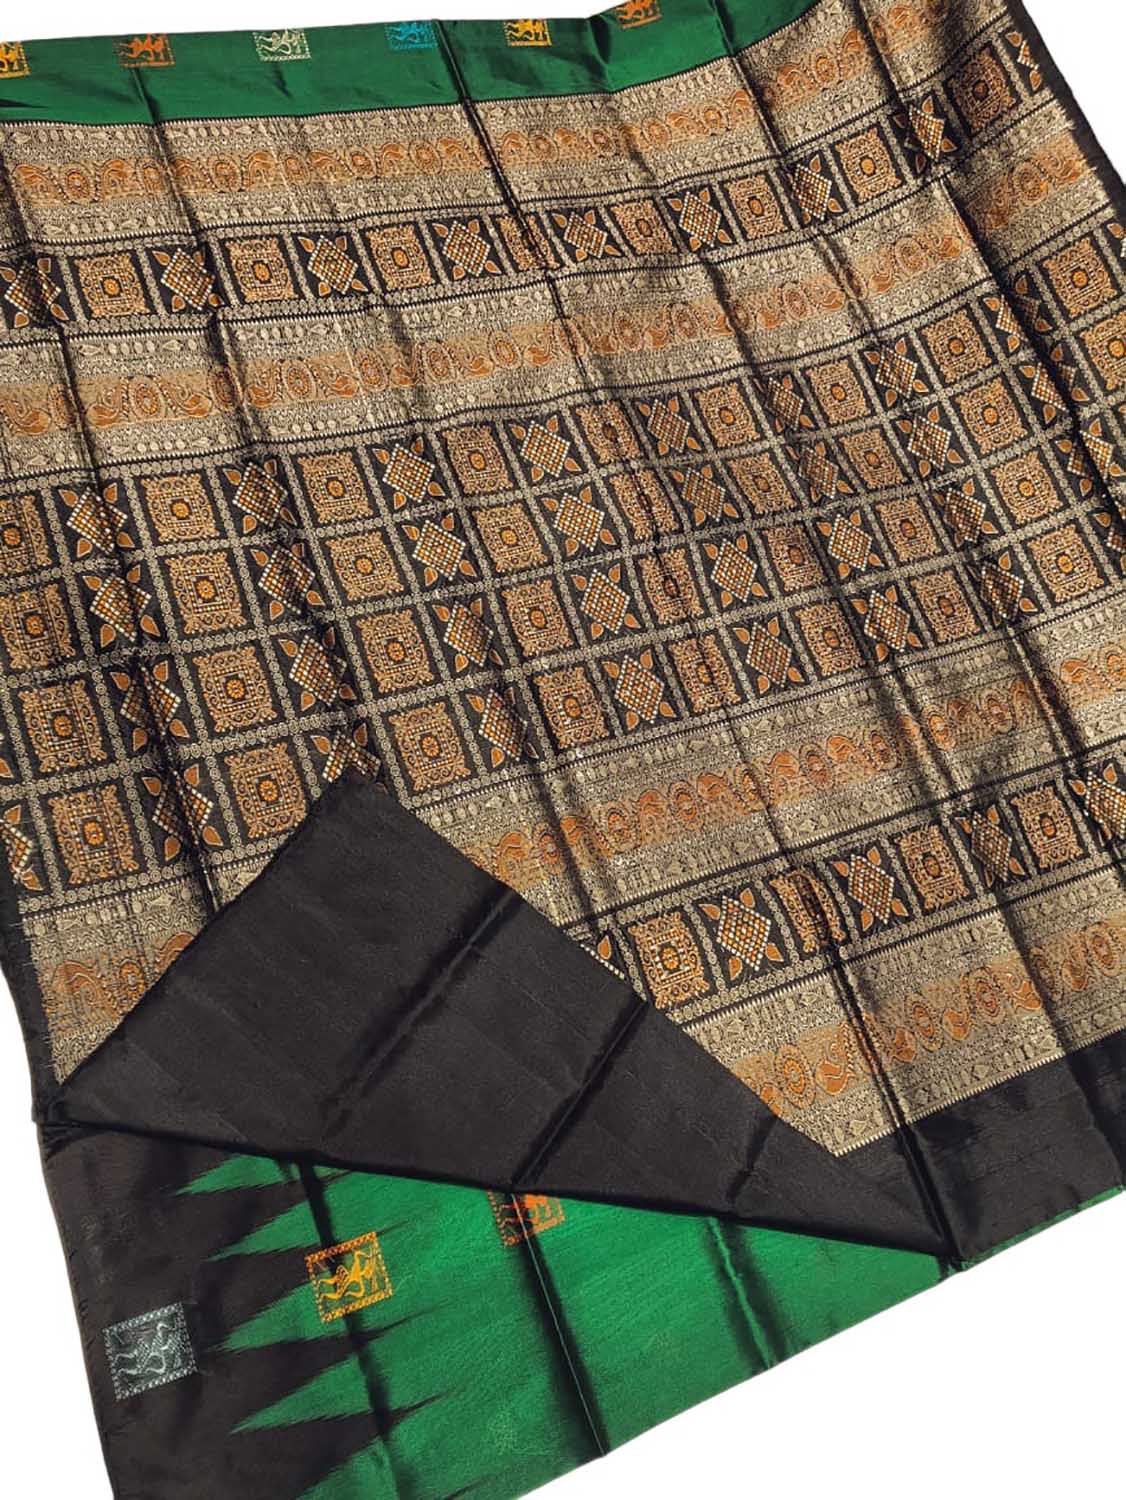 Stunning Green Handloom Ikat Silk Saree from Sambalpur - Luxurion World